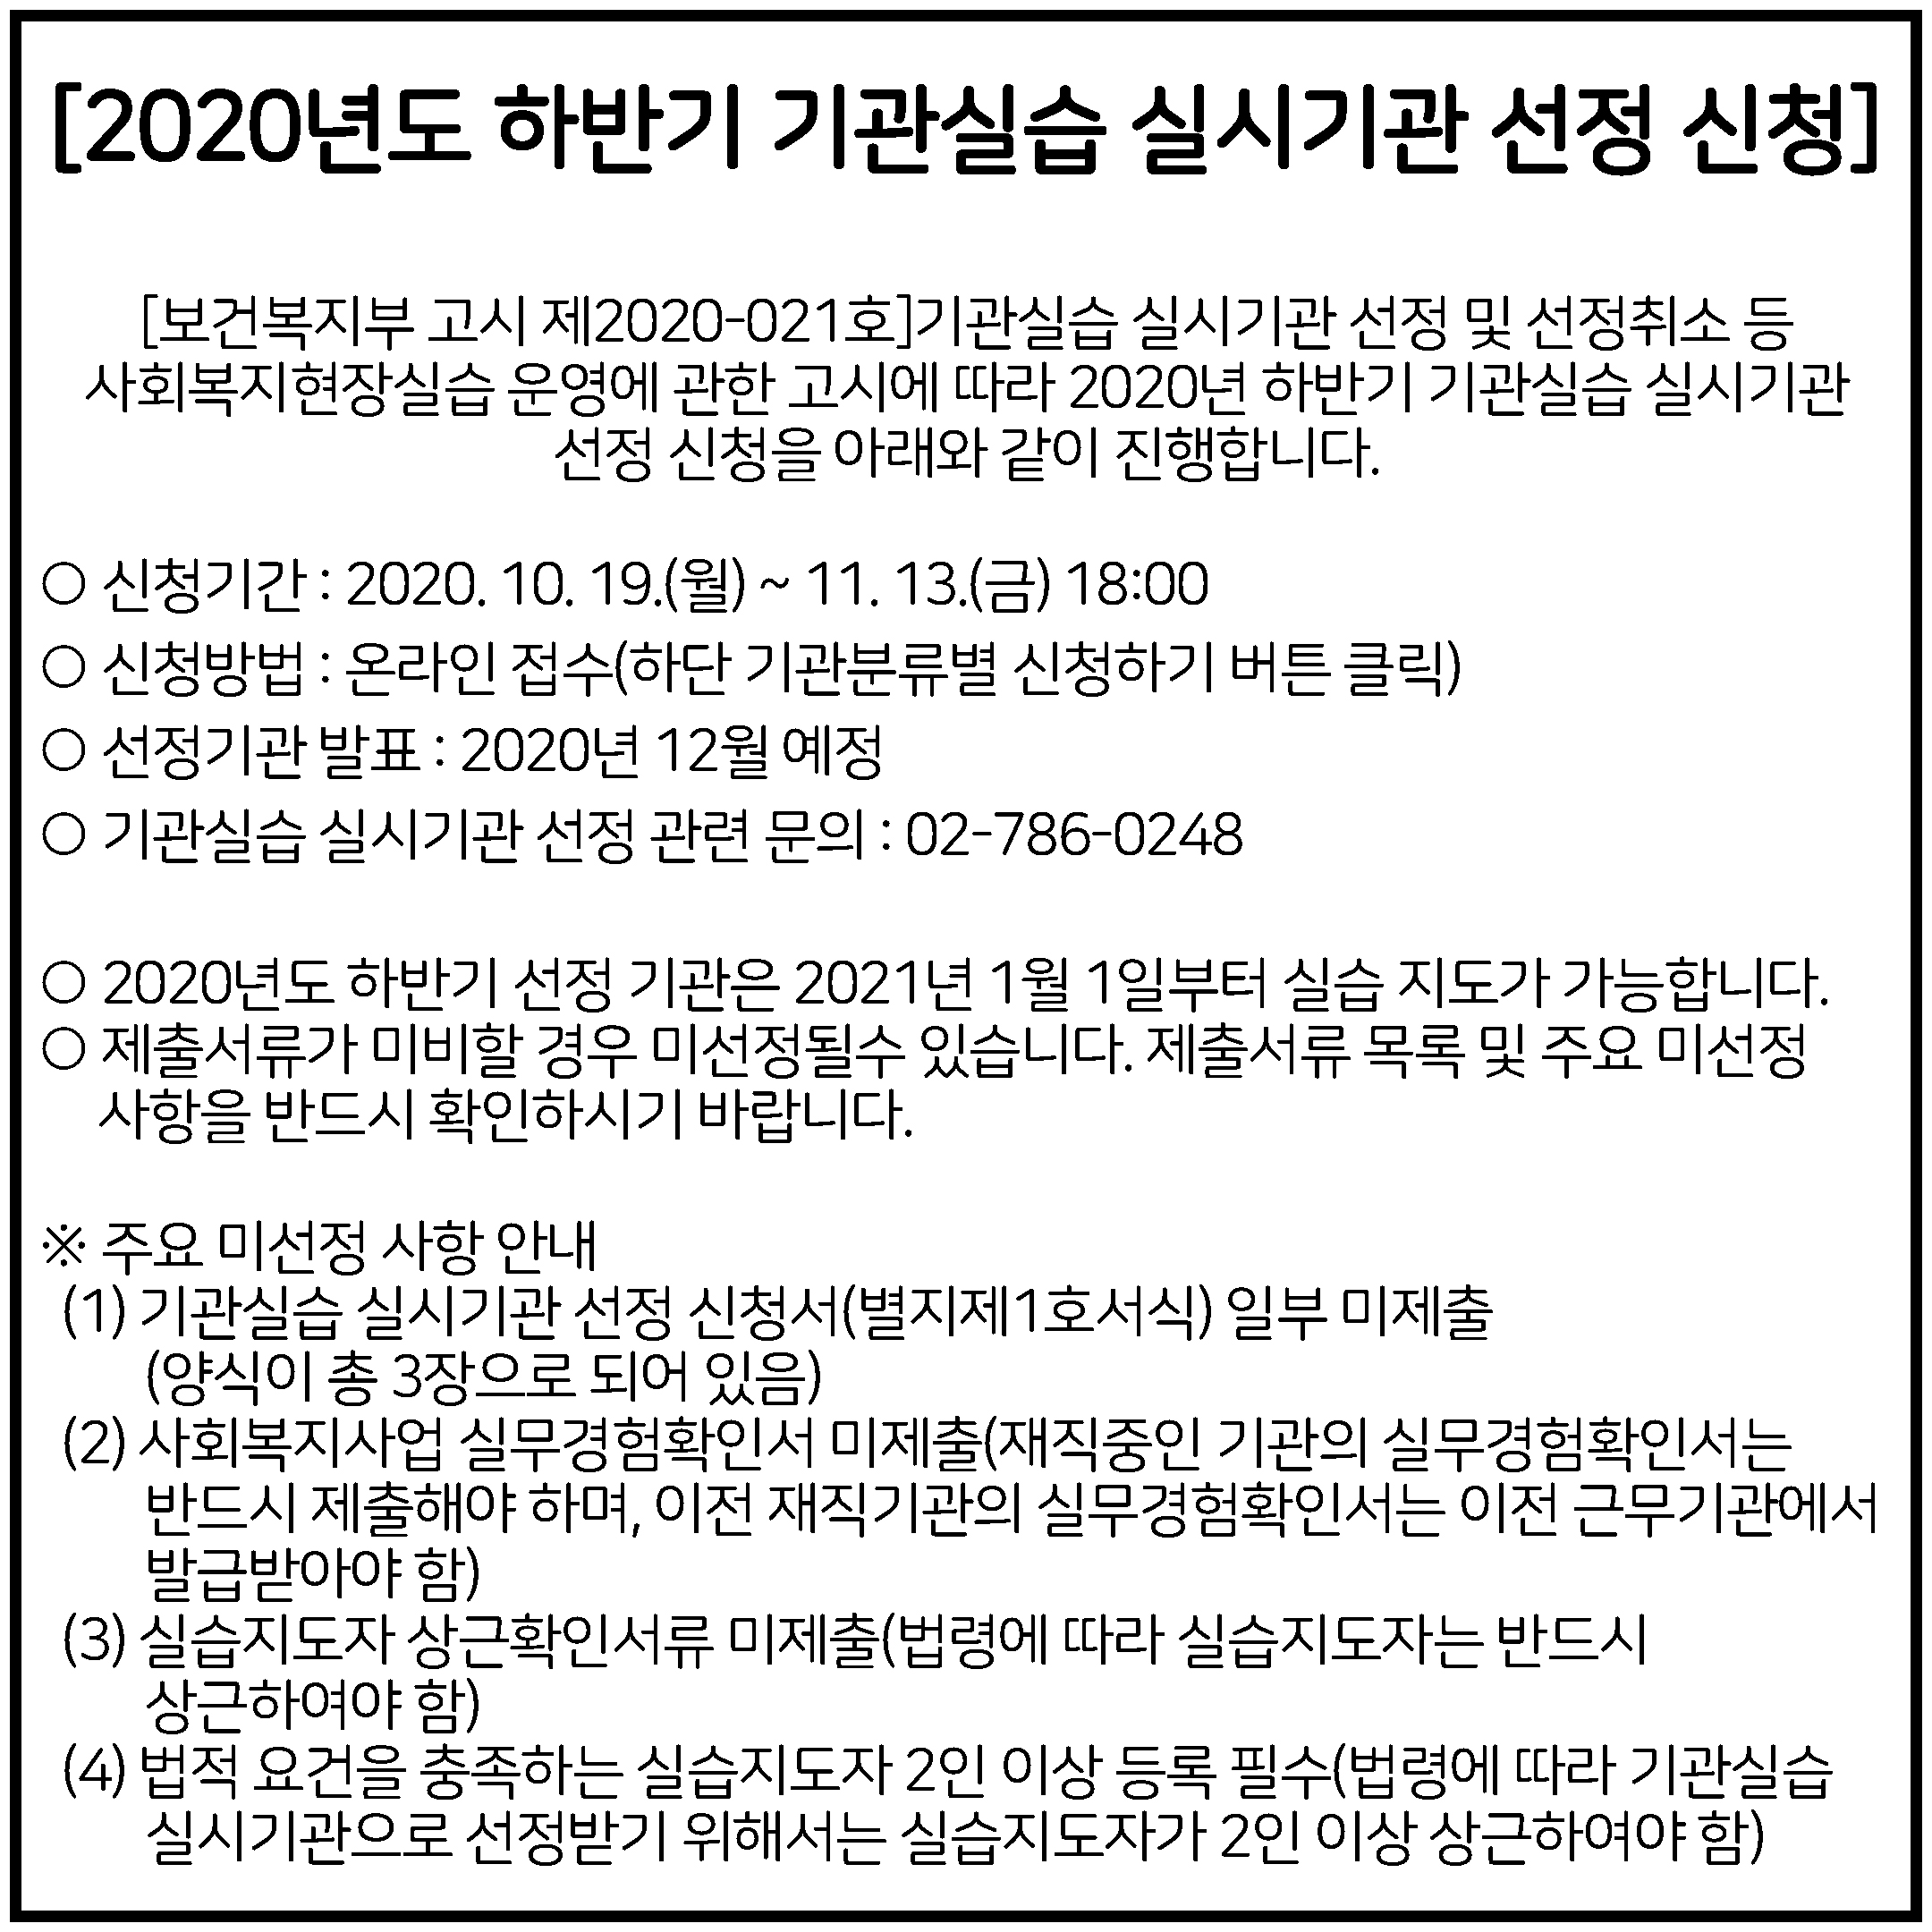 2020년도 하반기 실습기관 선정 신청-1.jpg